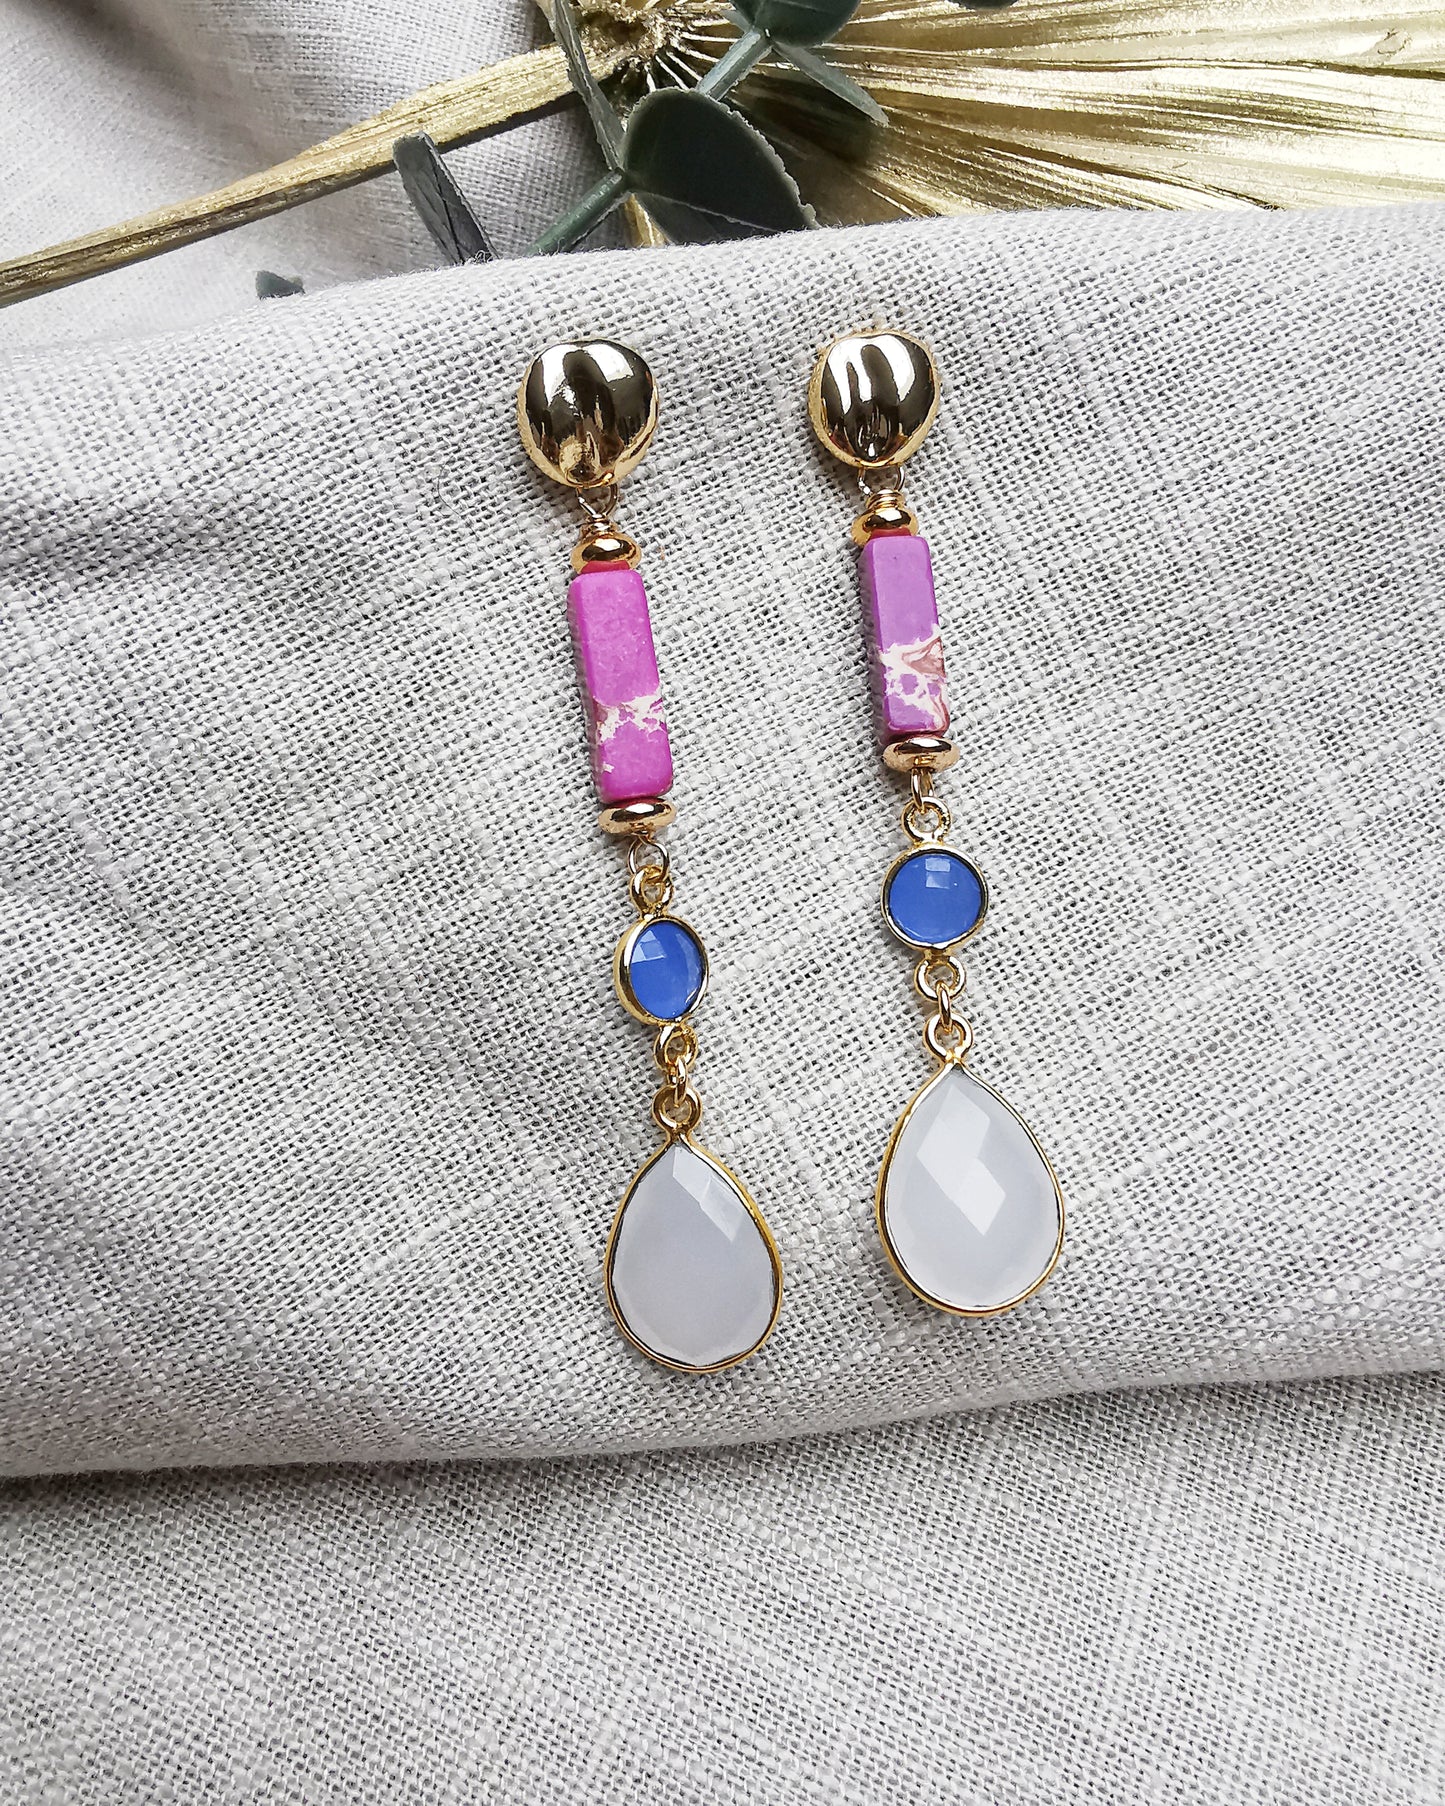 Lulu - Multi-Gemstone Long Drop Earrings with Imperial Jasper + Periwinkle Blue Chalcedony + White Chalcedony